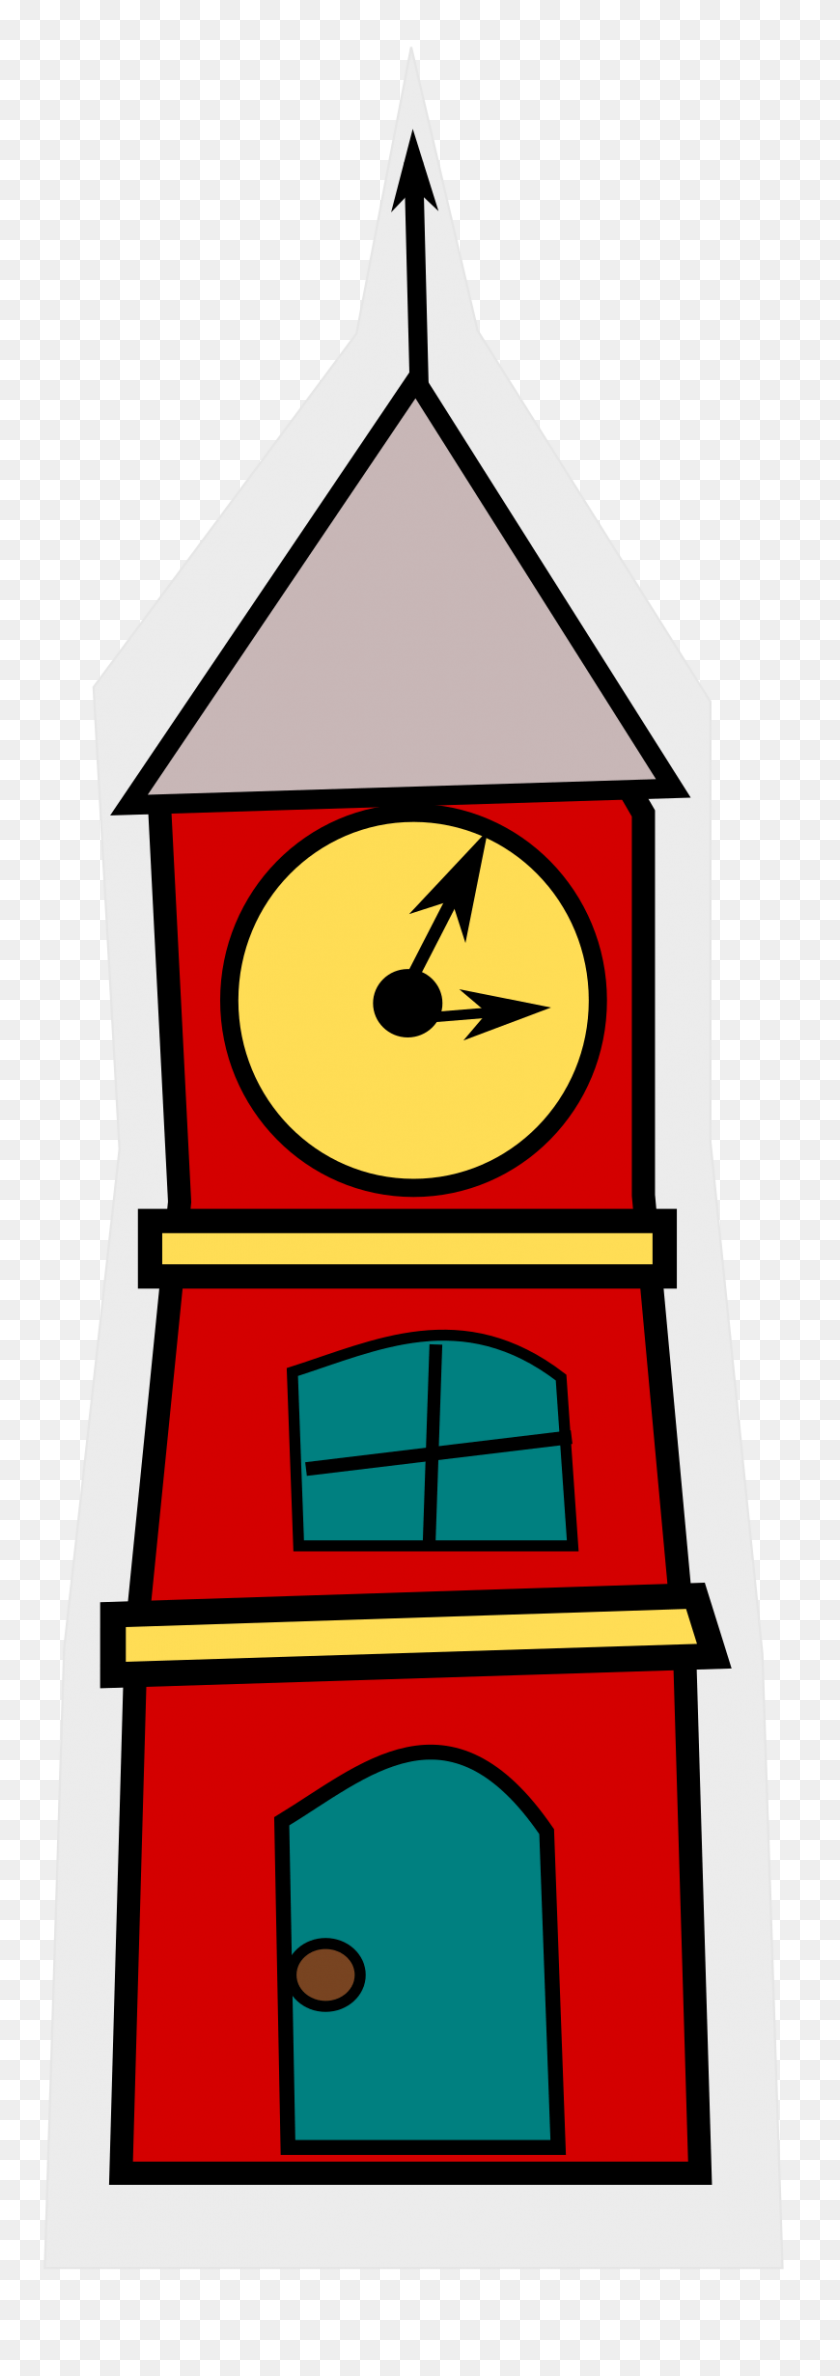 Башни с часами для детей